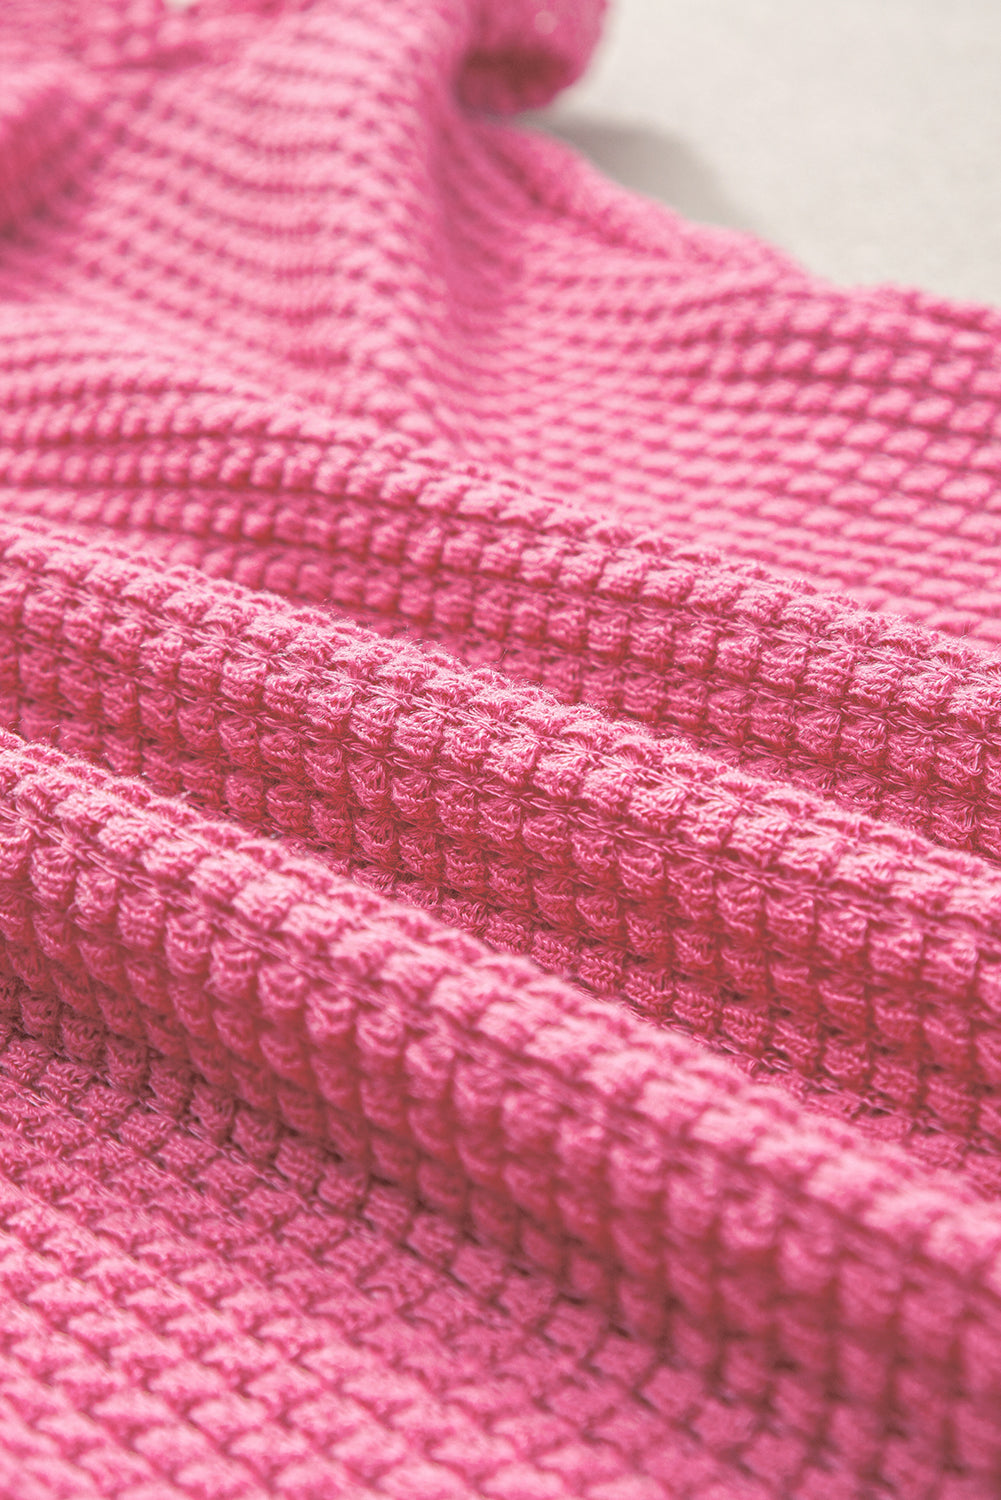 Svijetlo ružičasta majica s puf rukavima s naborima i pletenom bojom